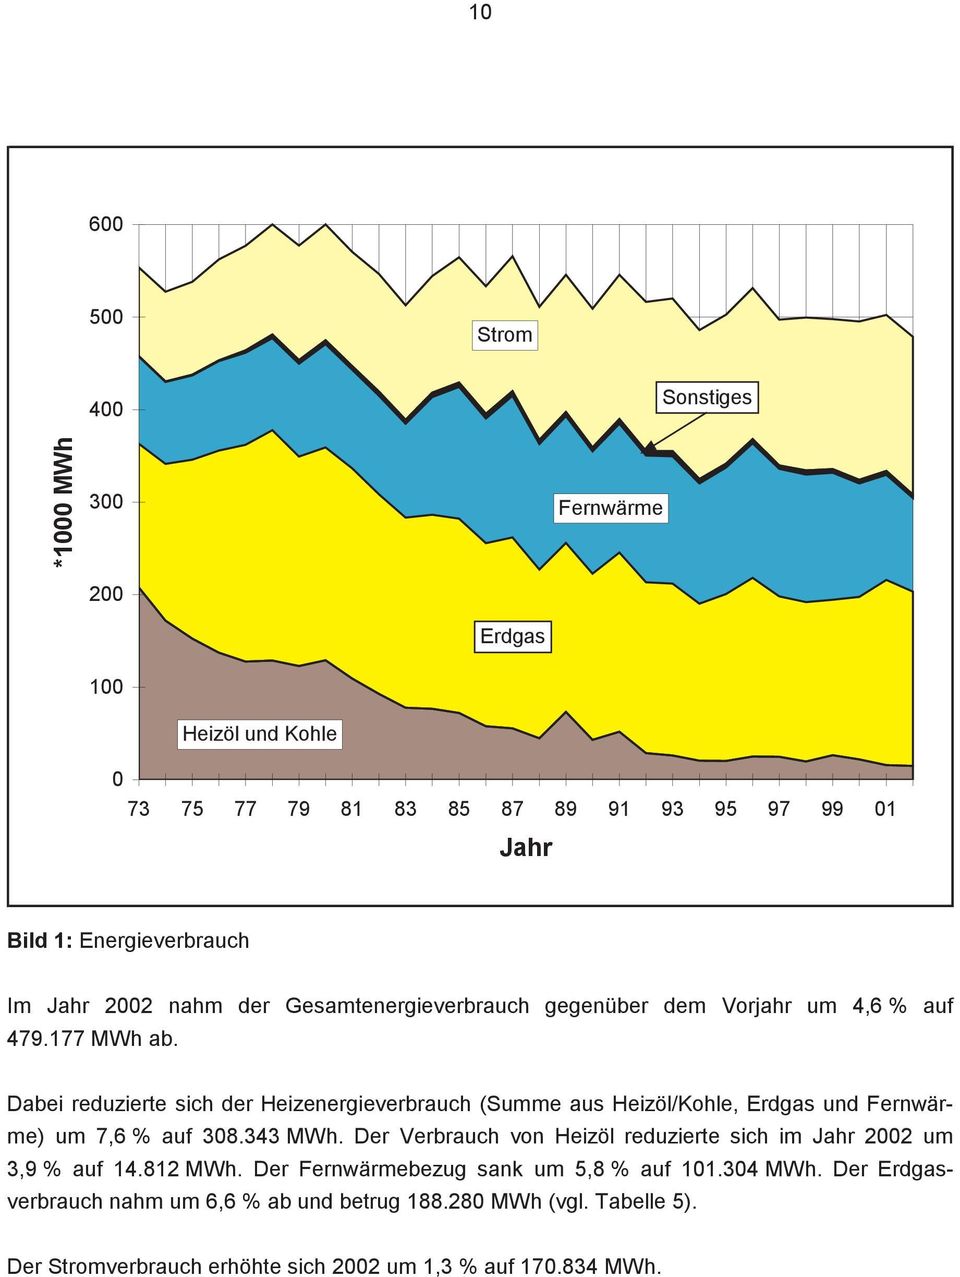 Dabei reduzierte sich der Heizenergieverbrauch (Summe aus Heizöl/Kohle, Erdgas und Fernwärme) um 7,6 % auf 308.343 MWh.